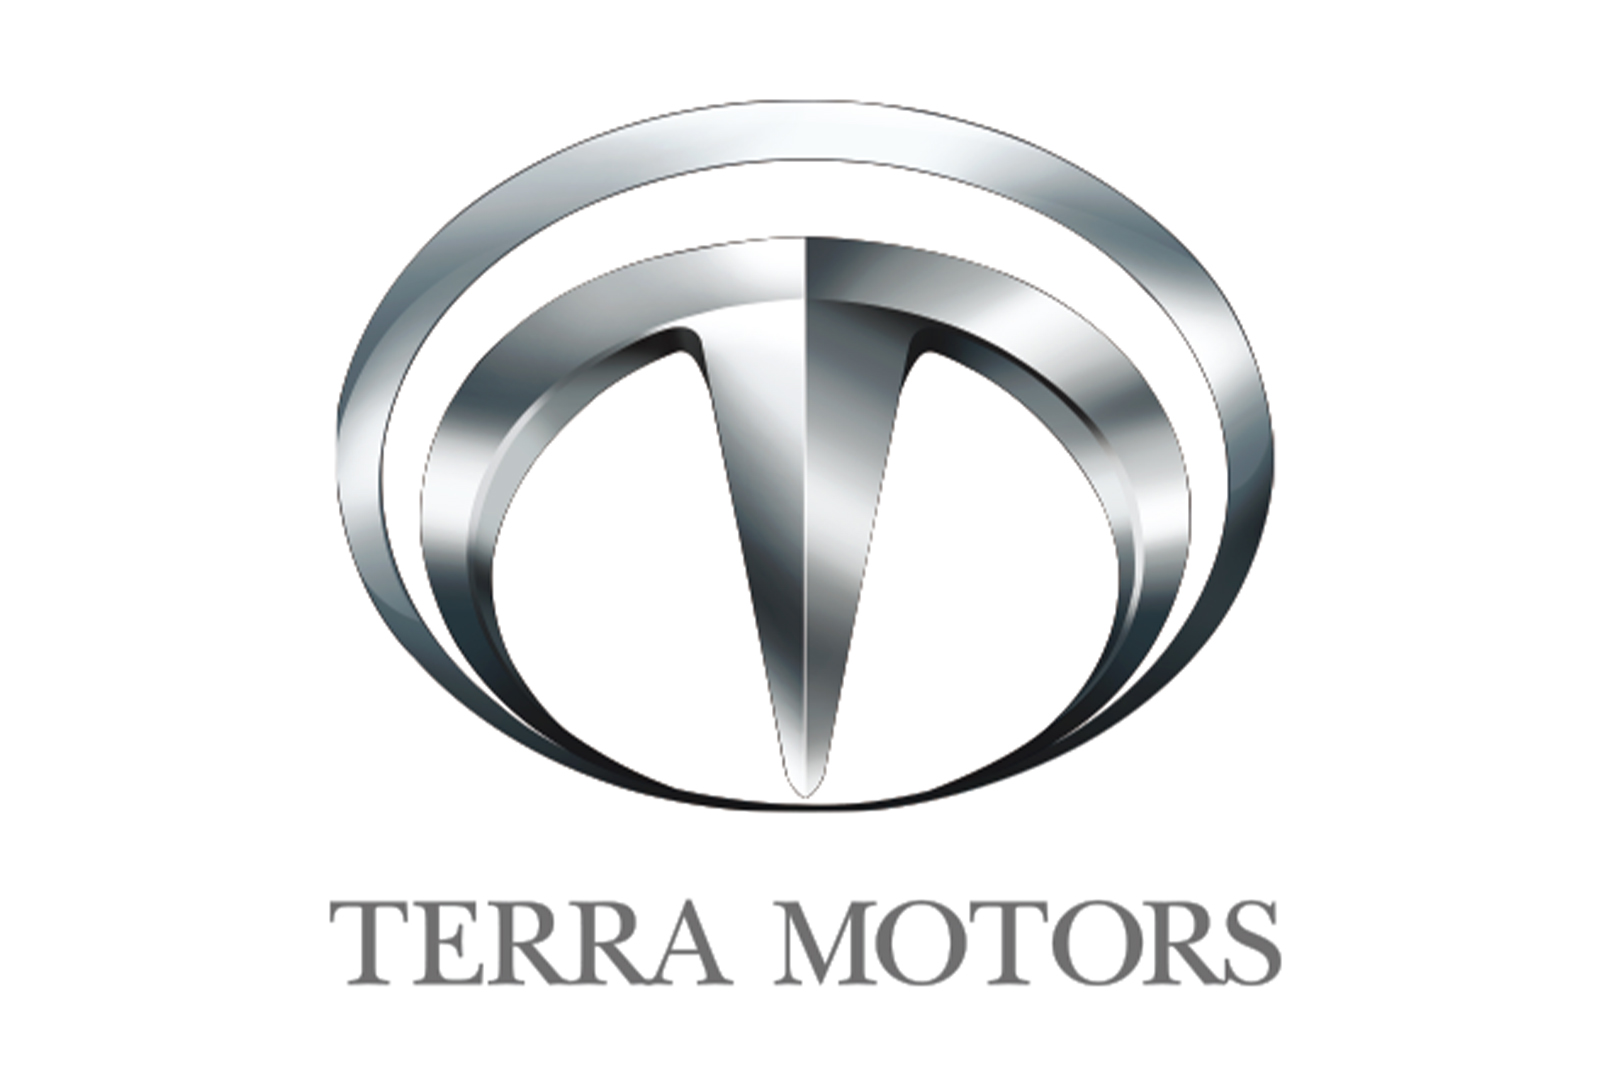 2022-06-05-05-43-29-Terra-Motors-ORIGINAL.jpg